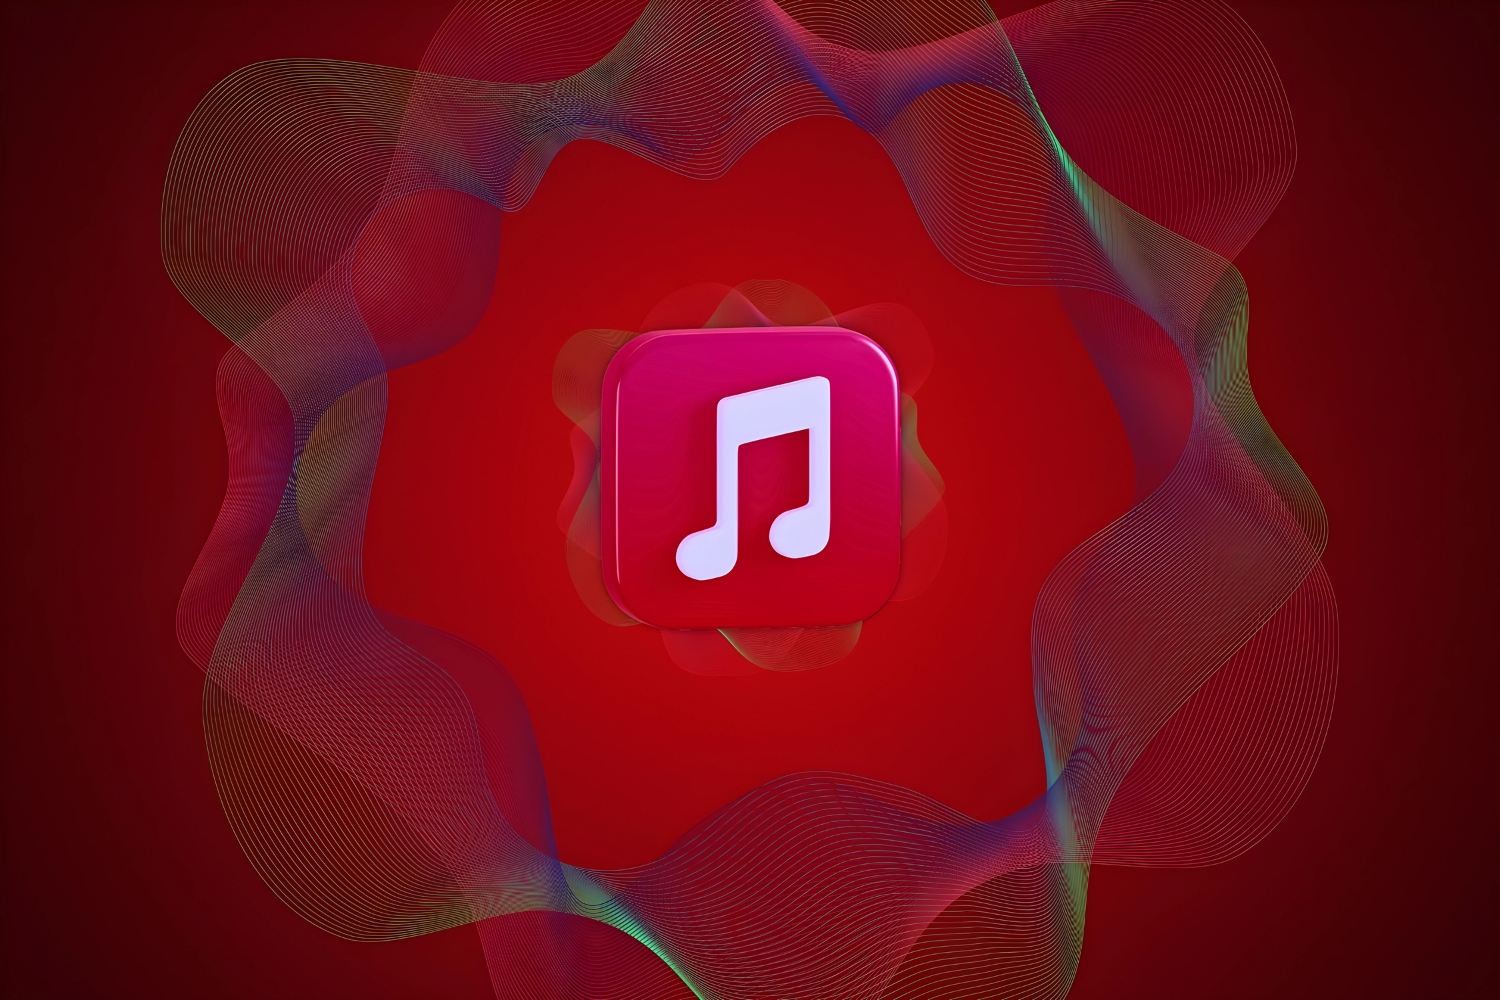 Apple music audio son musique spatiale credit iphon.fr